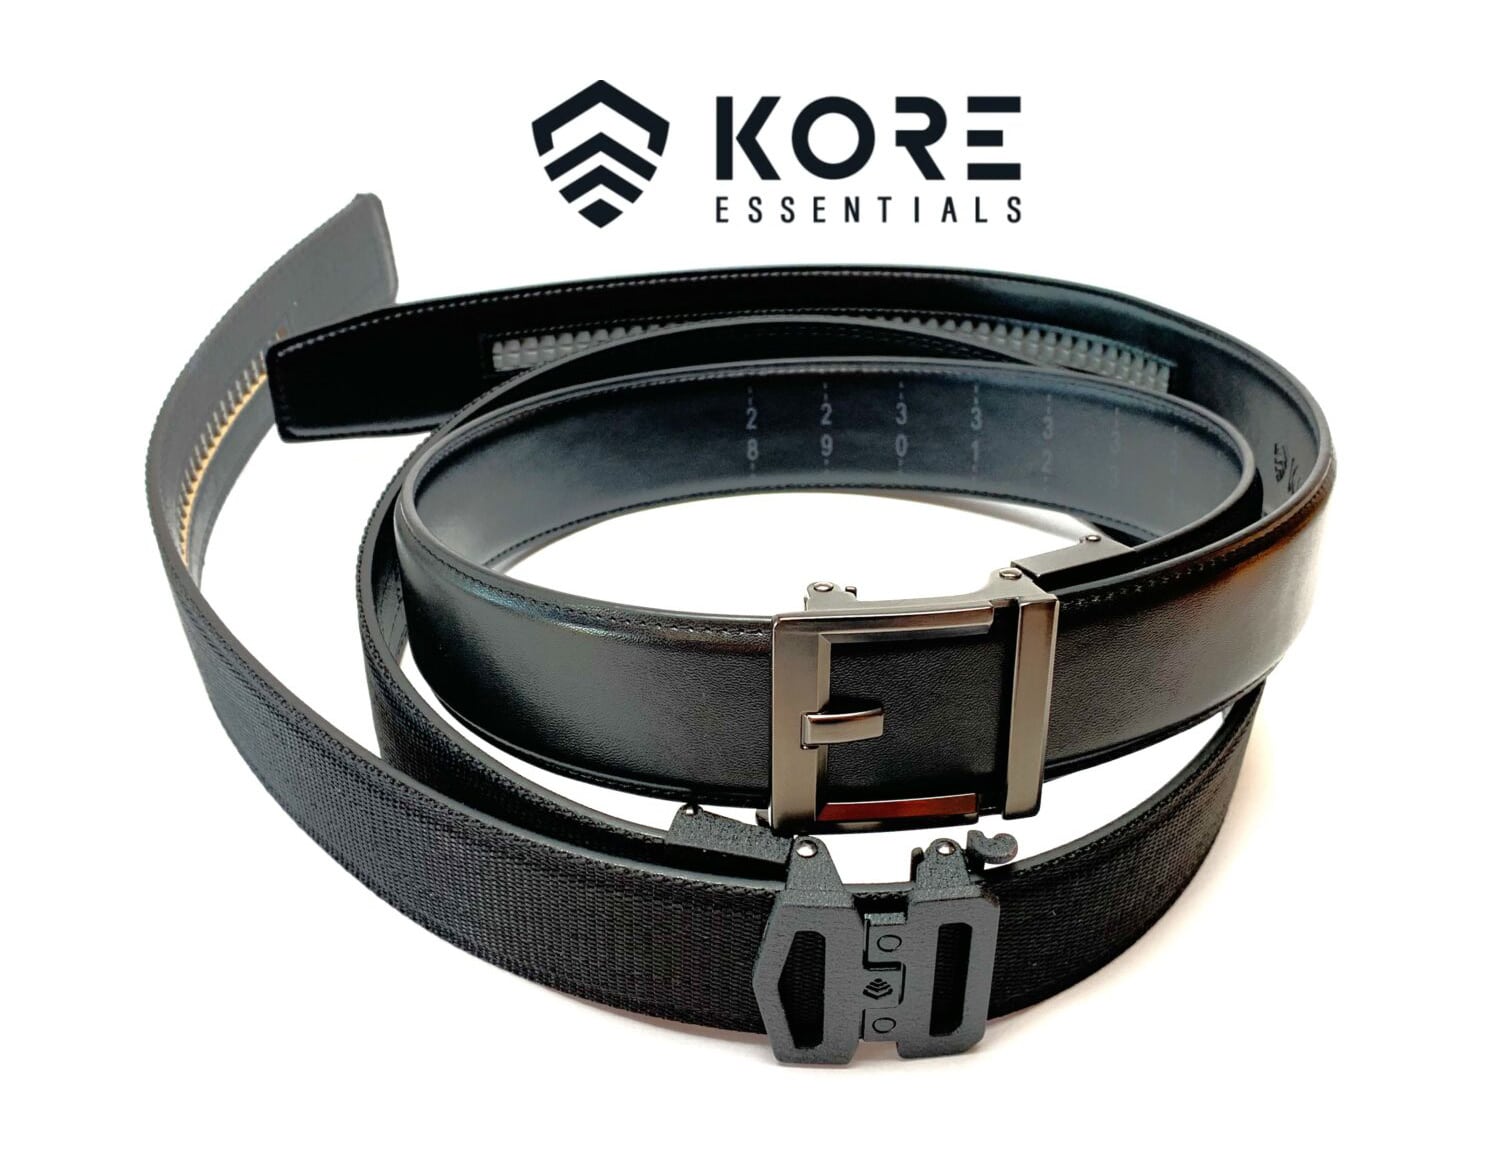 Kore Essentials gun belts